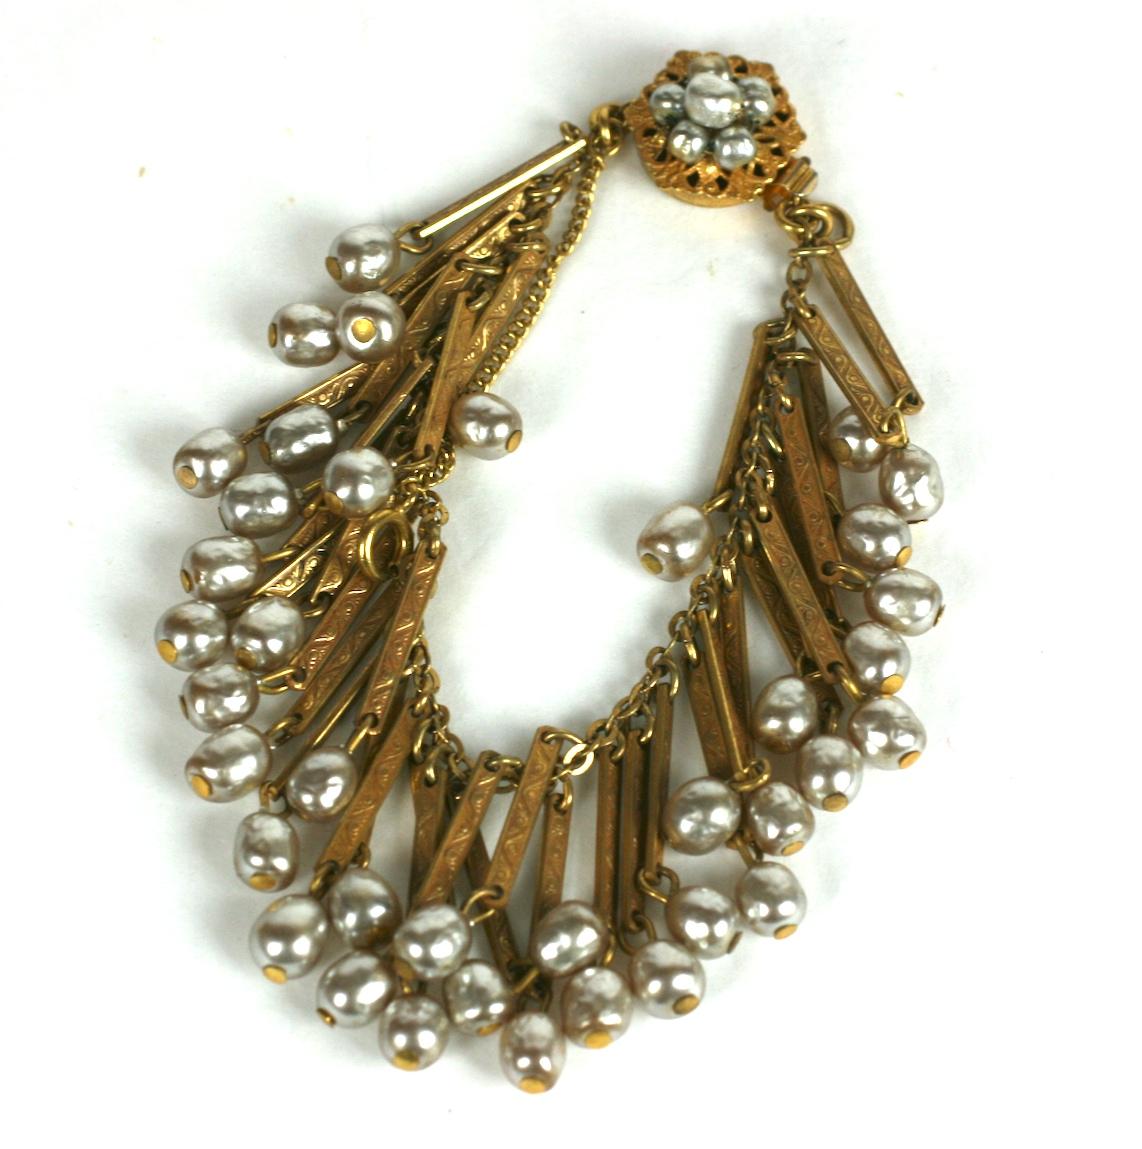 Bracelet à franges en fausses perles de Miriam Haskell, de style victorien, composé de perles baroques et de dorures russes.  des barres incisées créant une bordure de perles frangées. Fermoir hexagonal avec  détail de perles baroques.
Excellent